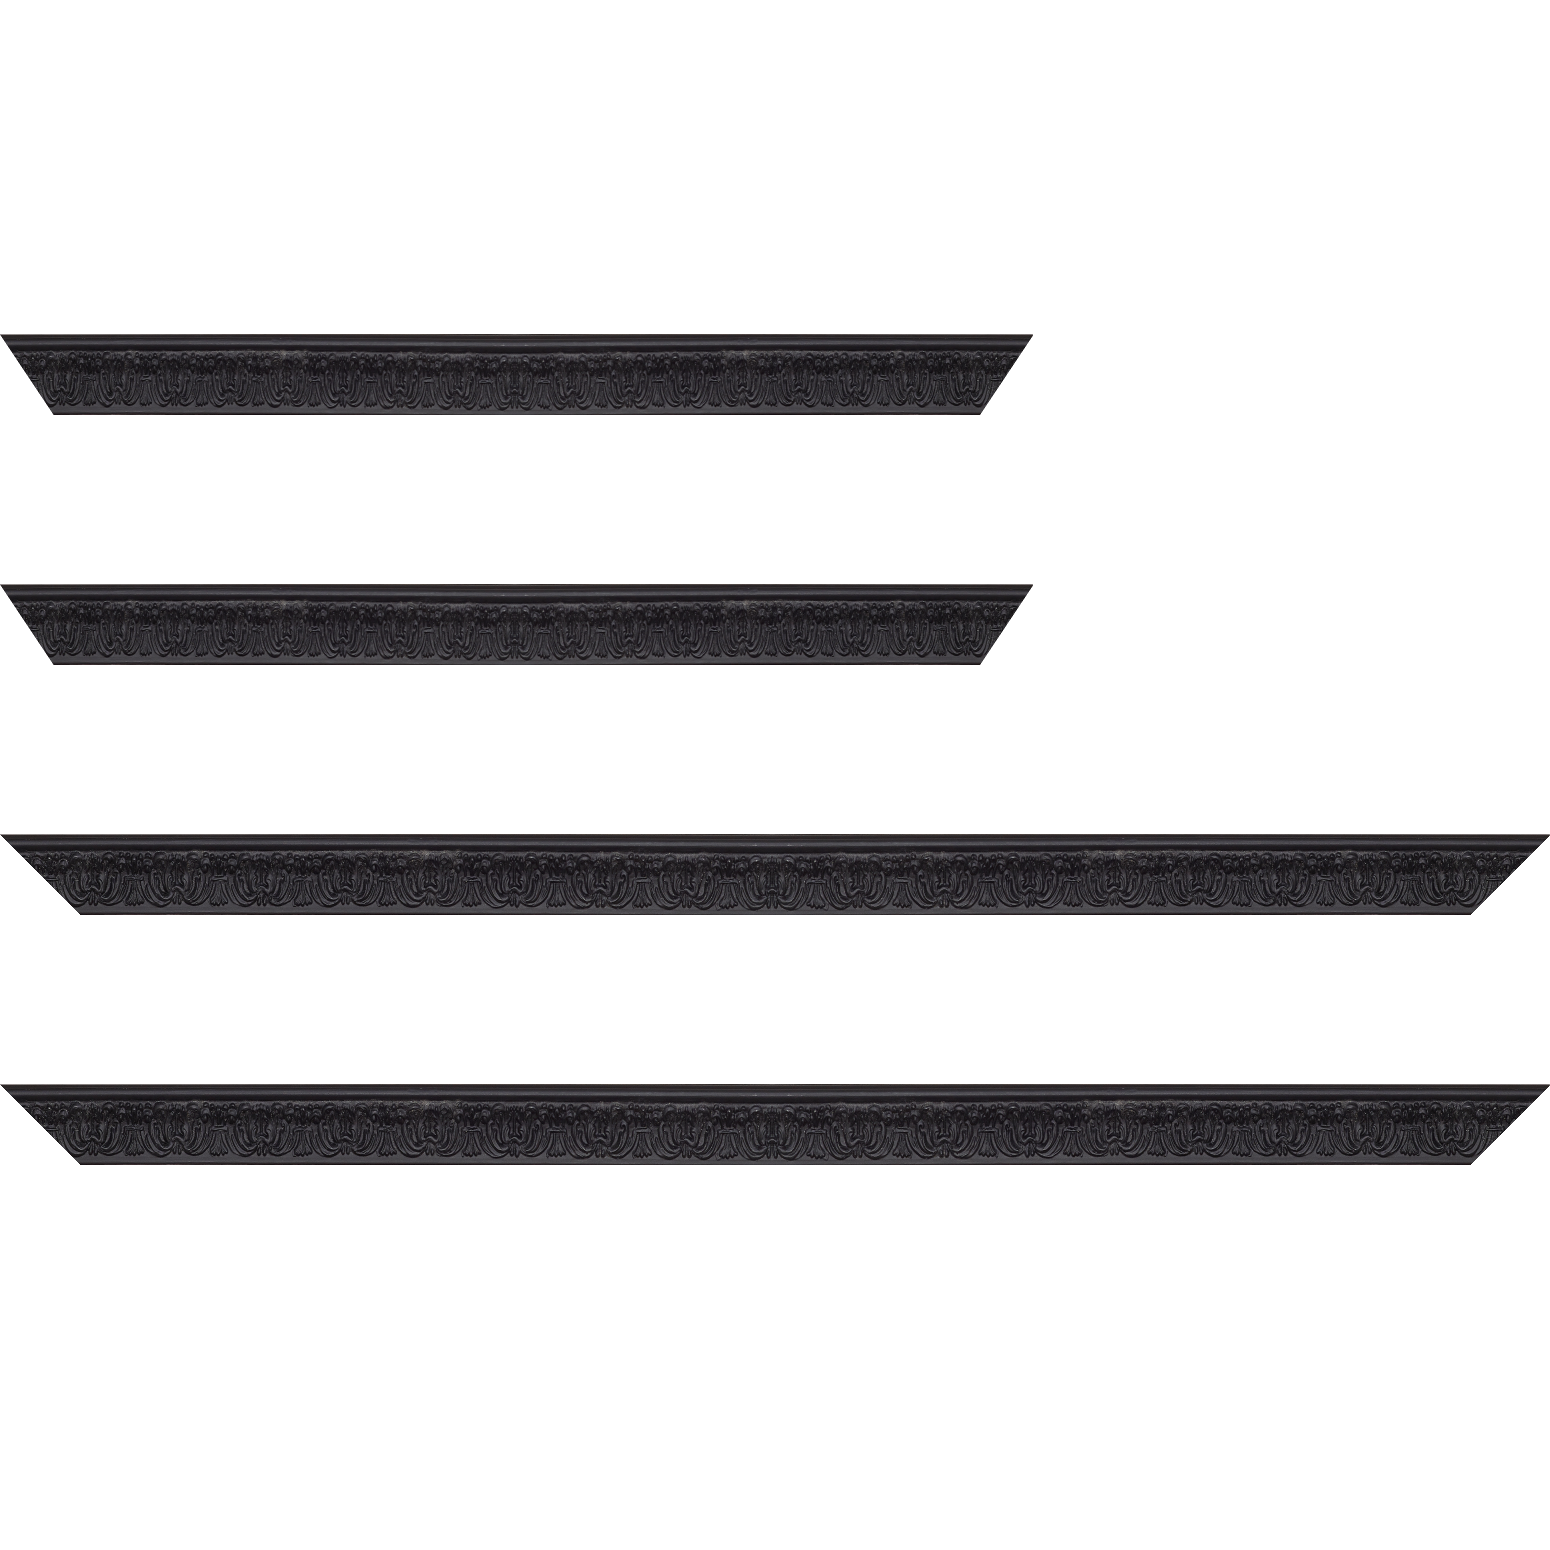 Baguette service précoupé Bois profil incurvé largeur 2.6cm couleur noir en relief sur fond noir